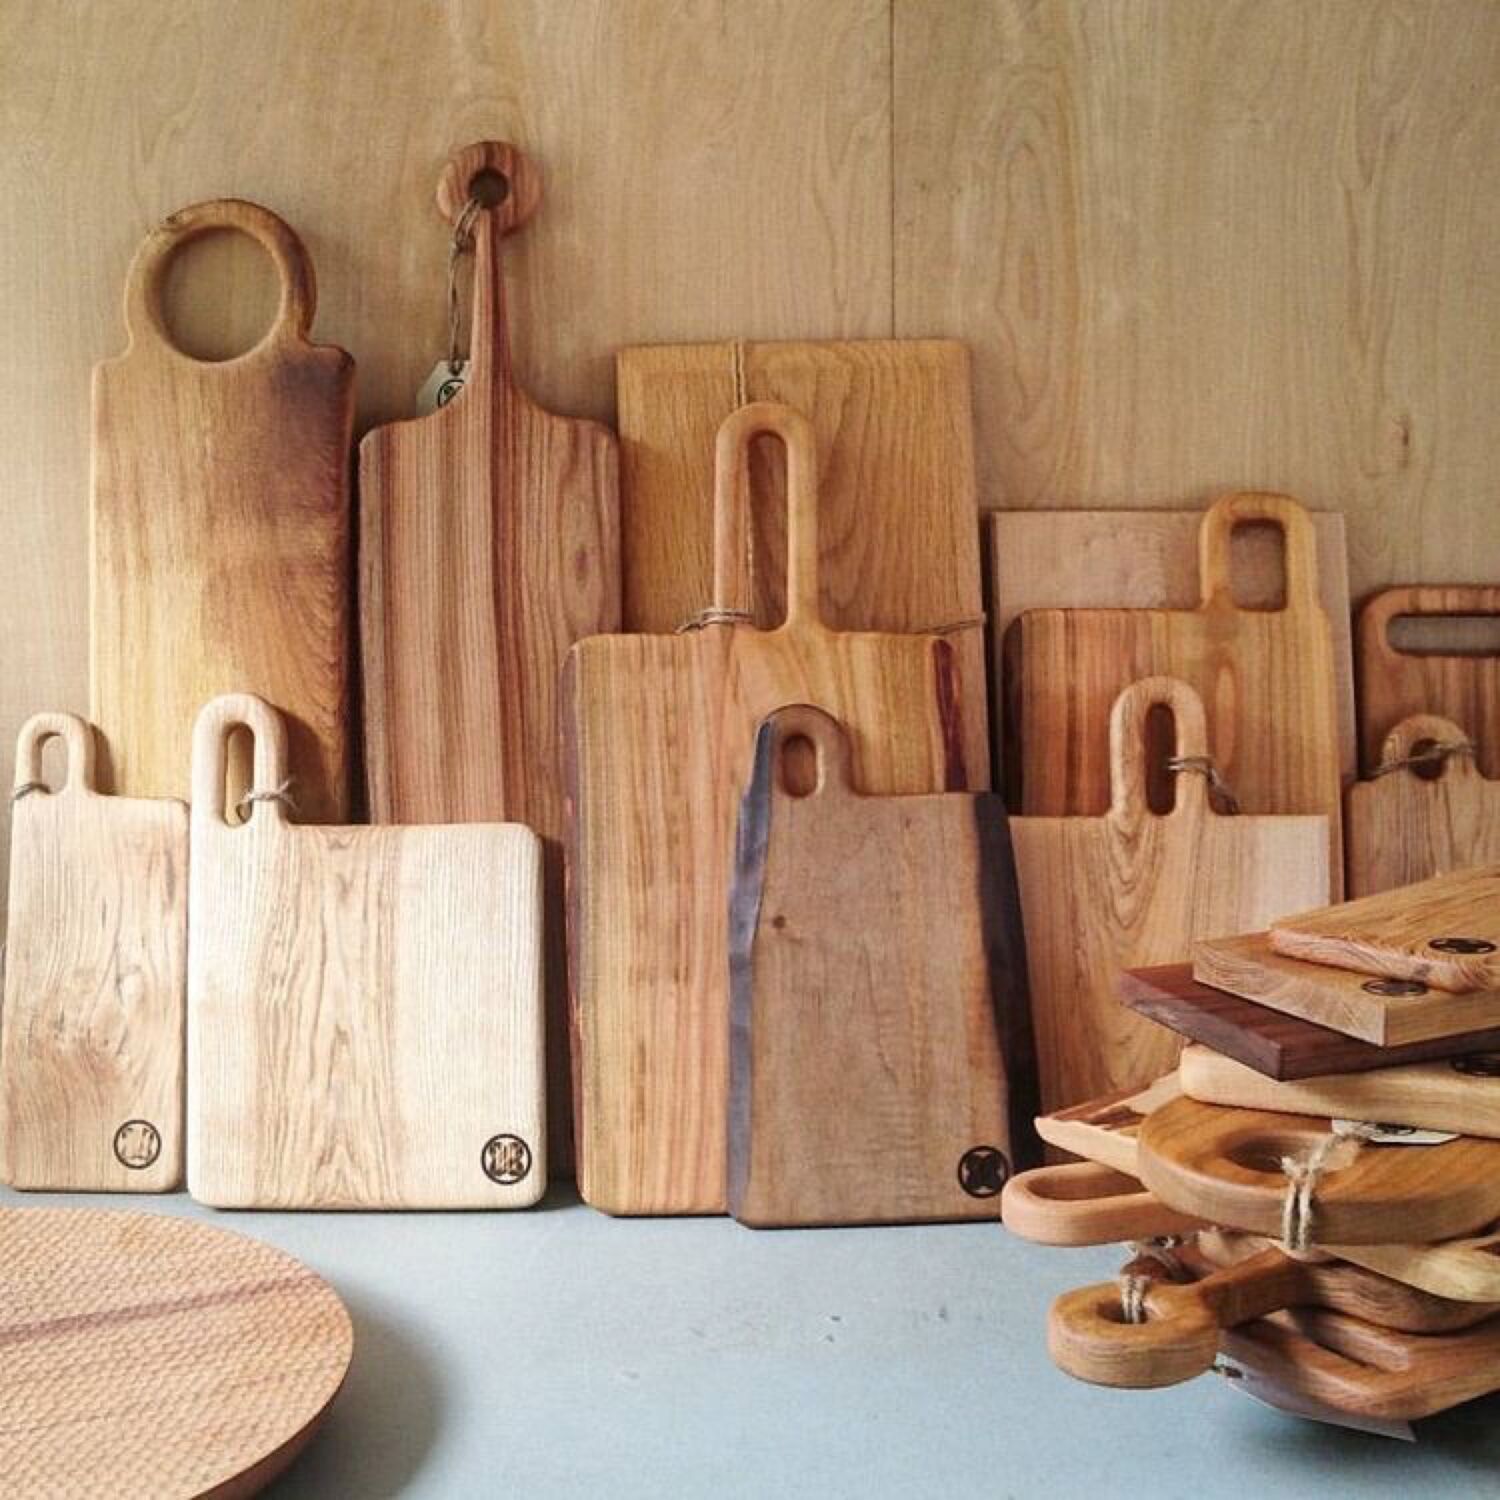 Wooden craft. Деревянные изделия. Изделия из древесины. Доска разделочная деревянная. Деревянные изделия разделочная доска.